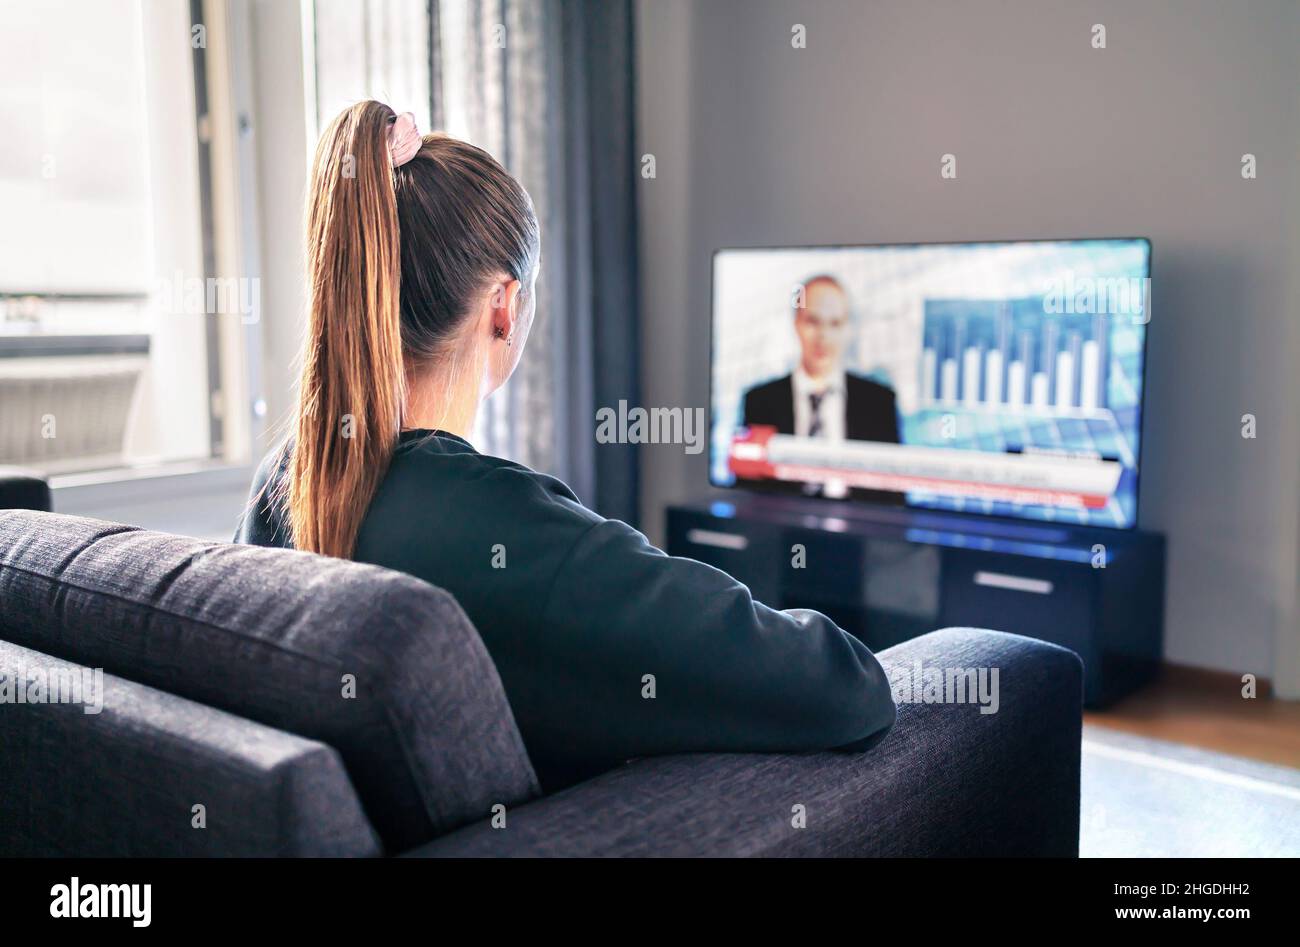 TV-Nachrichten. Frau, die im Wohnzimmer Fernsehen schaut. Reporter, Anchor und Studio-Moderator auf dem Bildschirm mit Nachrichtenüberschriften. Sitzende Person. Stockfoto